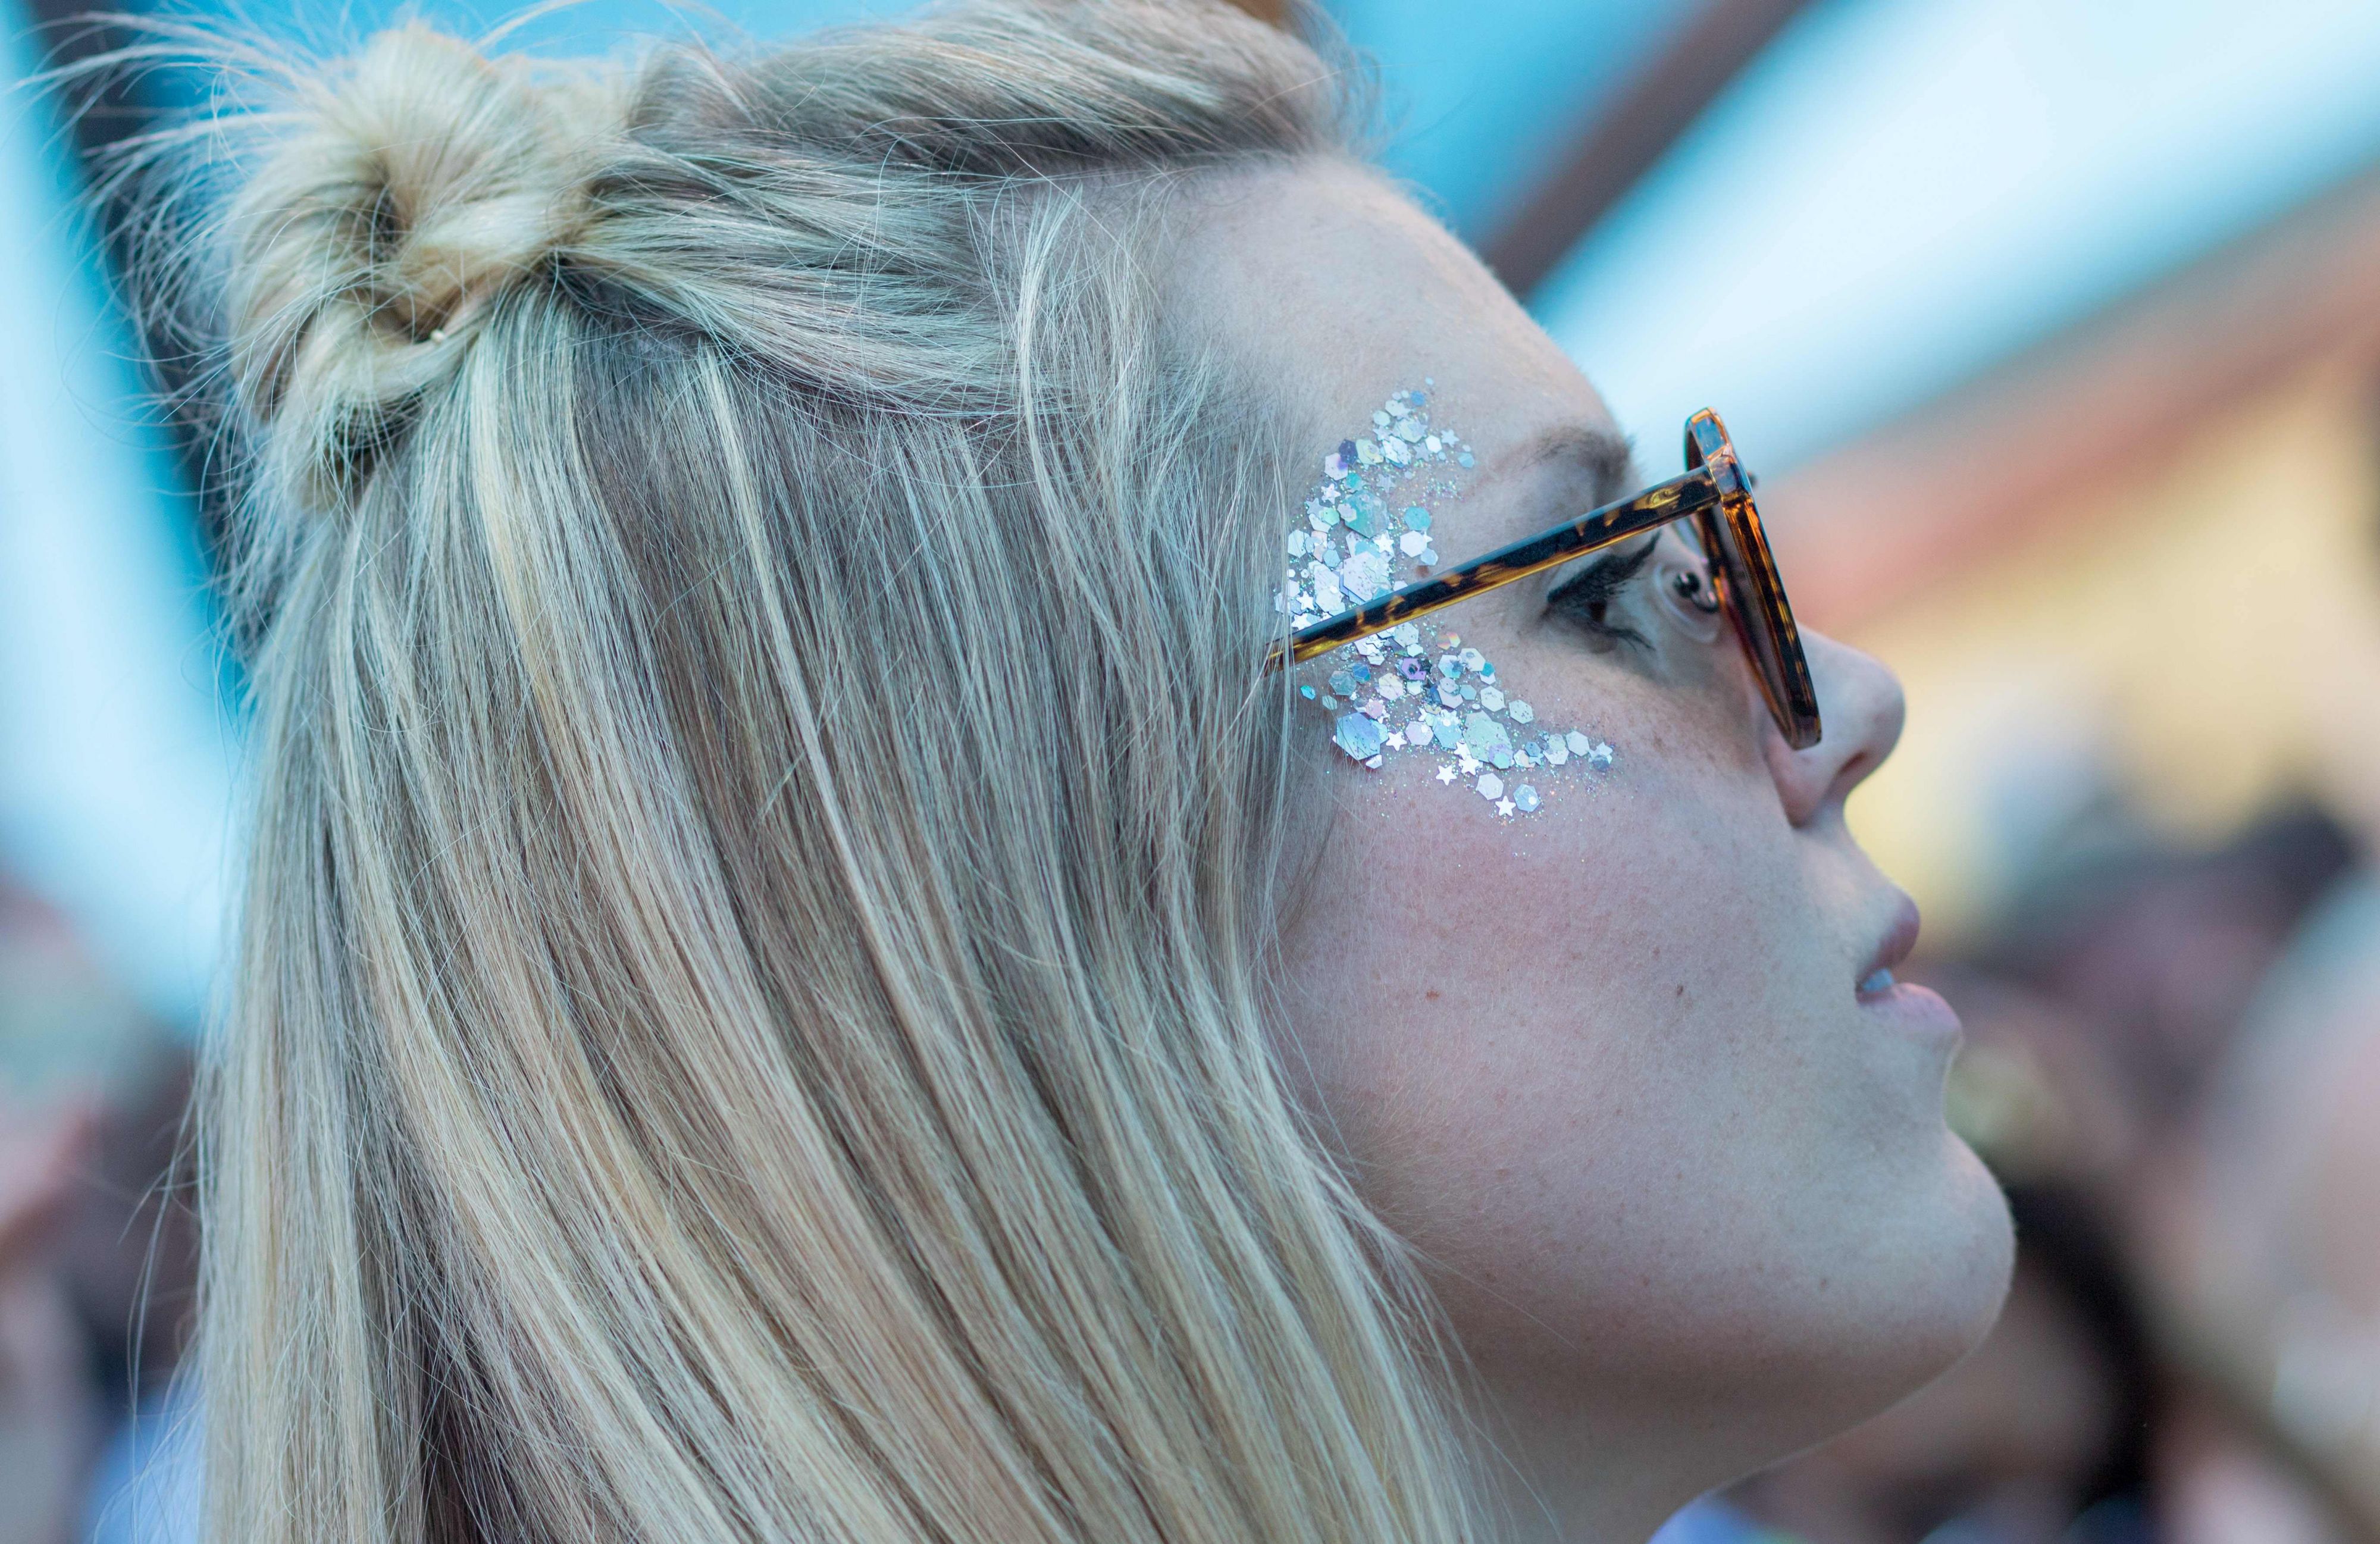 Glitters mogen er dit festivalseizoen weer helemaal wezen. Foto: ANP